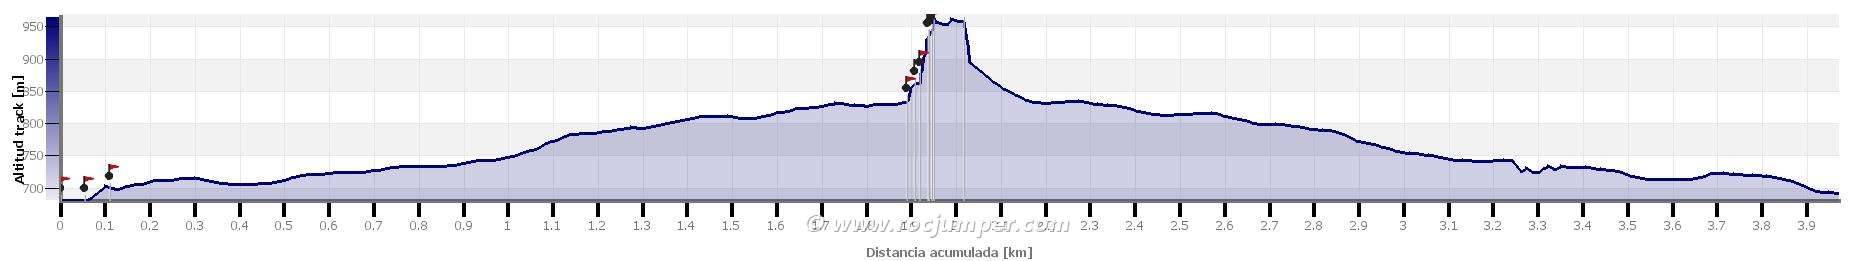 Altimetría - Vía Tsering Agulla de Ratpenat Montserrat